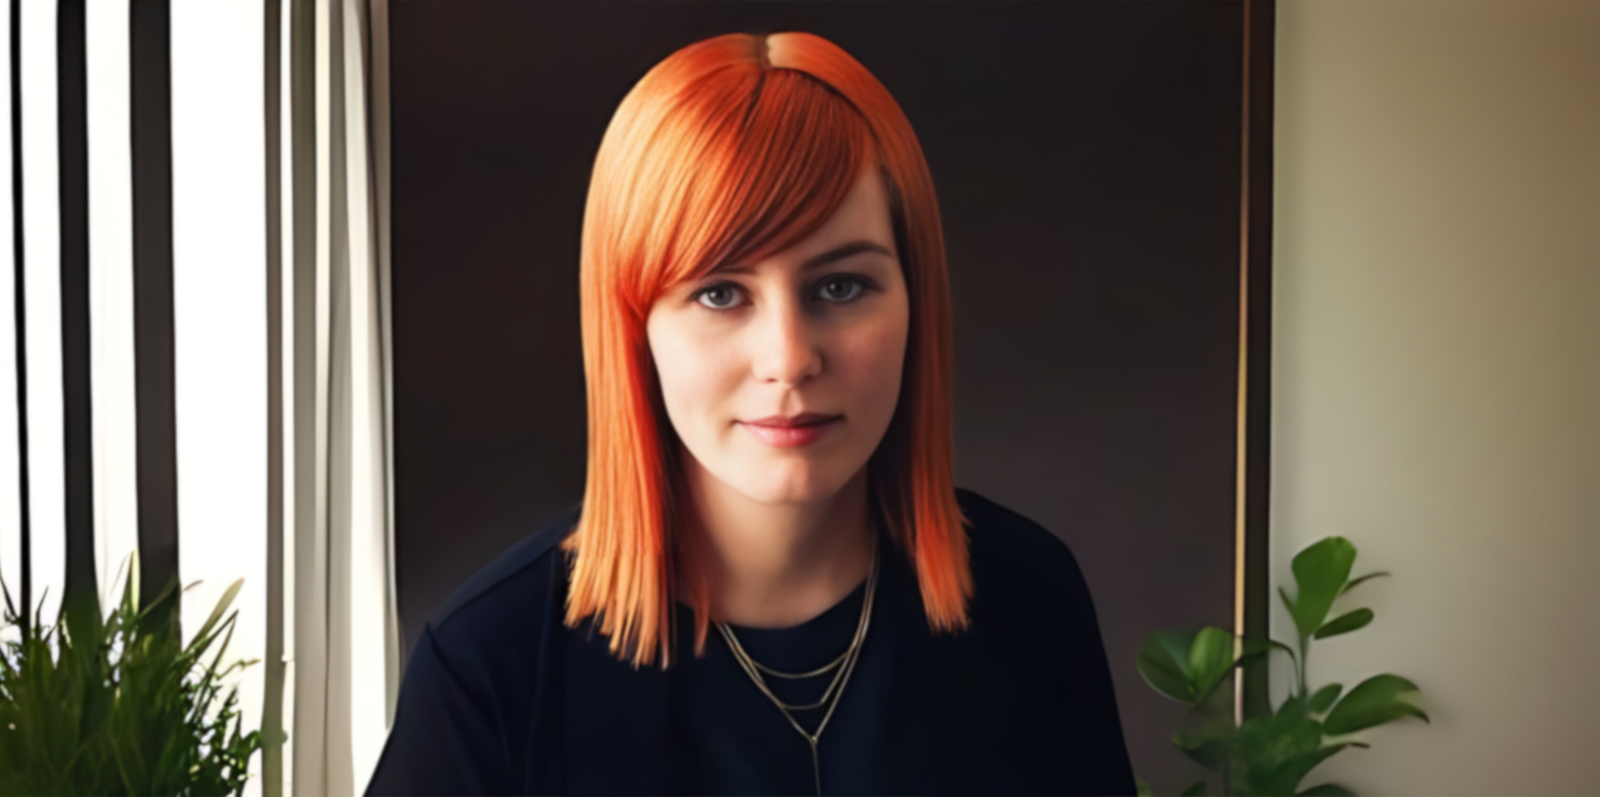 Portrett av Sandra Oen. Hun har stritt hår med lugg ned til skuldrene. Håret er i en sterk orange farge, som står i kontrast til hennes svarte klær. 